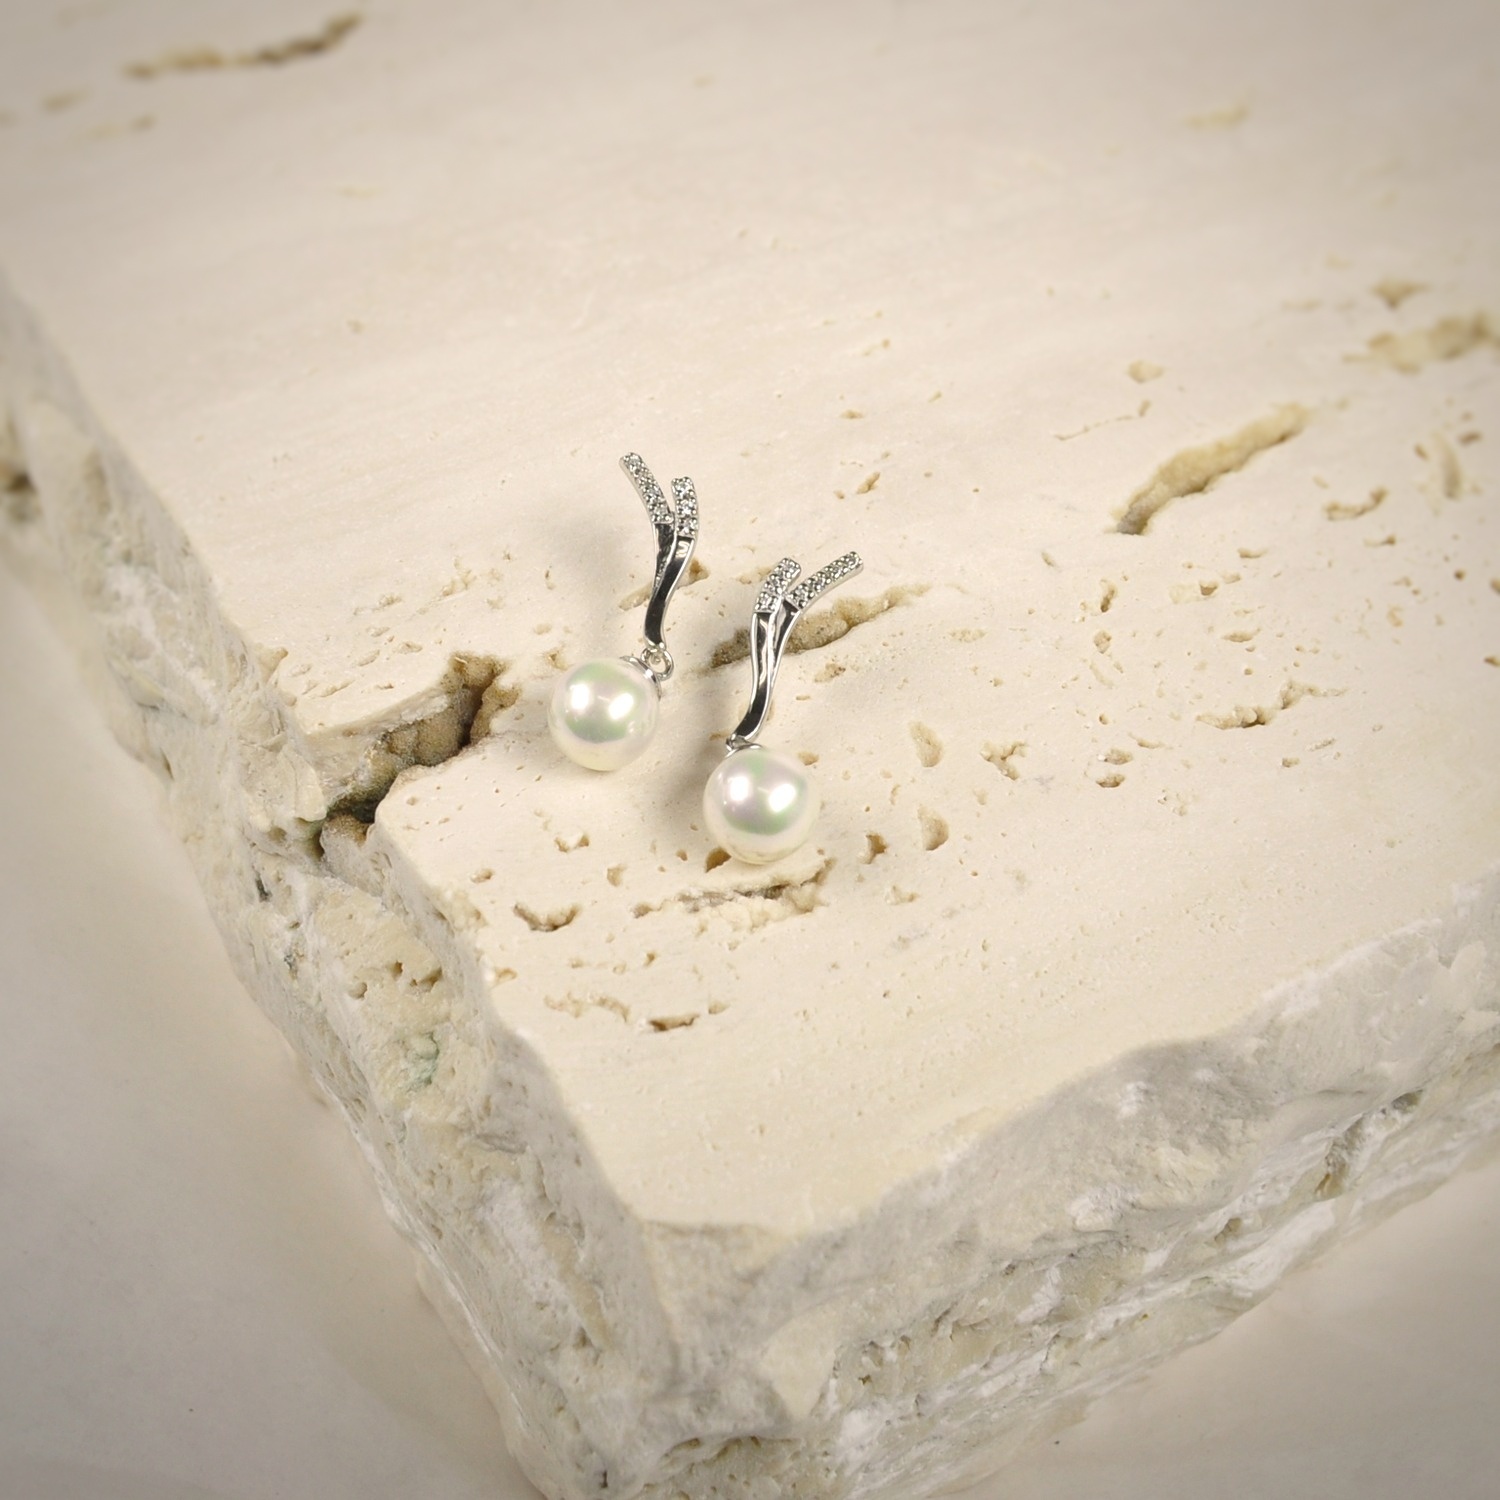 Silver Pearl earrings 2